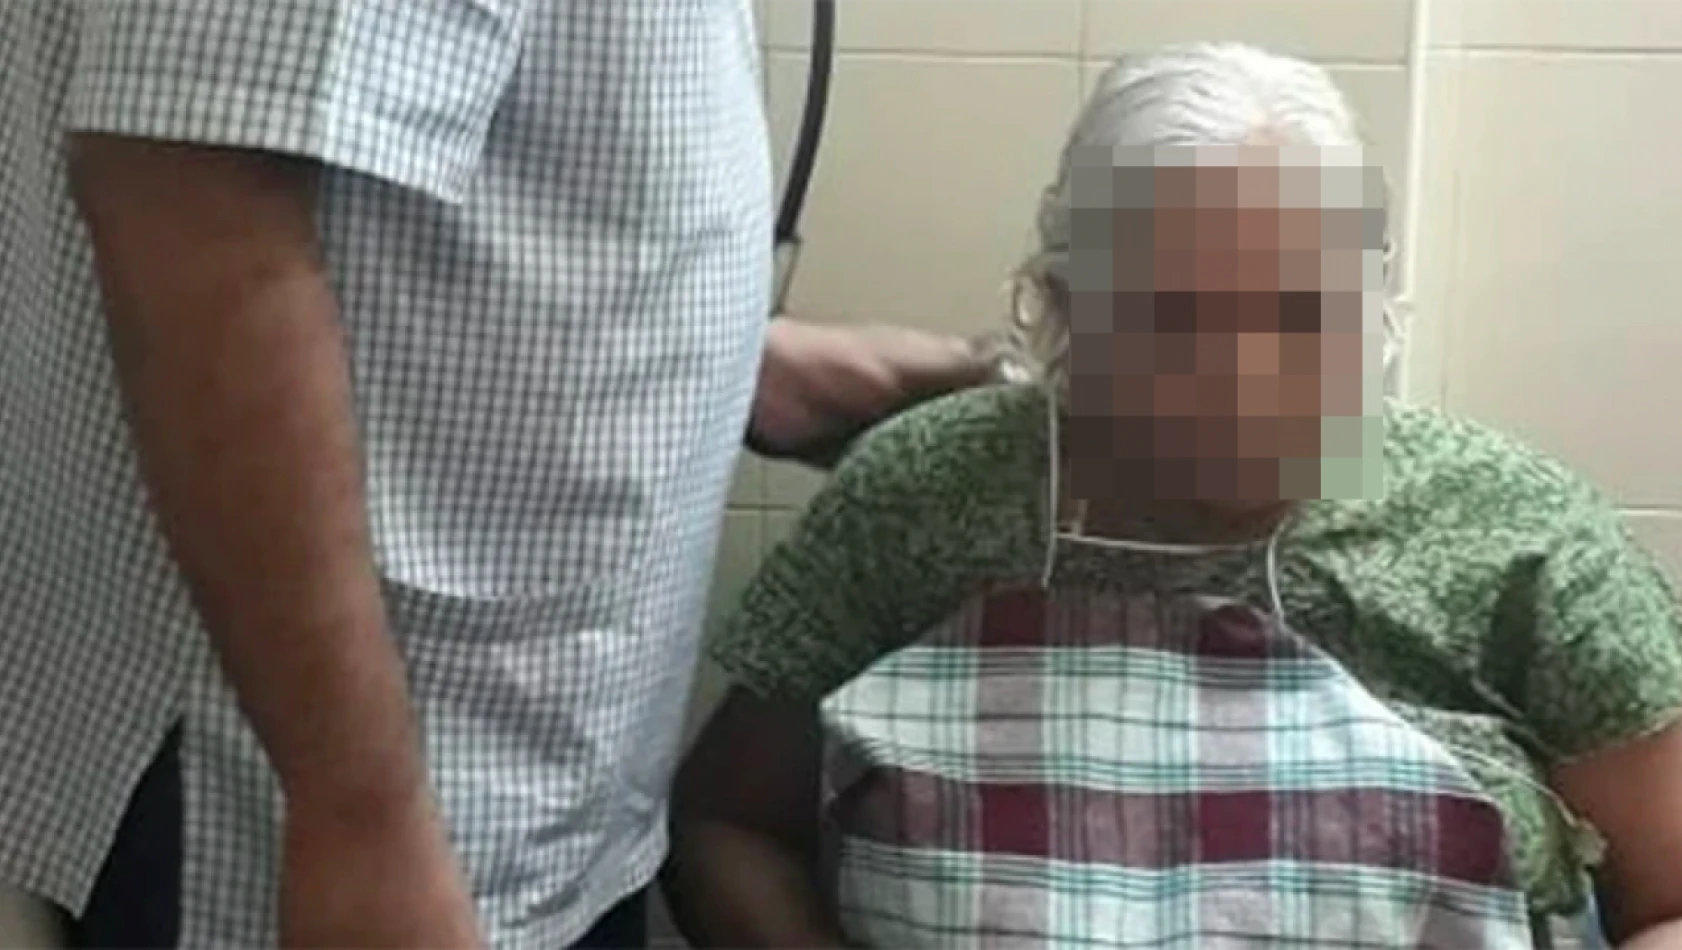 Dünya'da neler oluyor? Meksika'da 84 yaşındaki kadının karnında bulunan şoke etti!